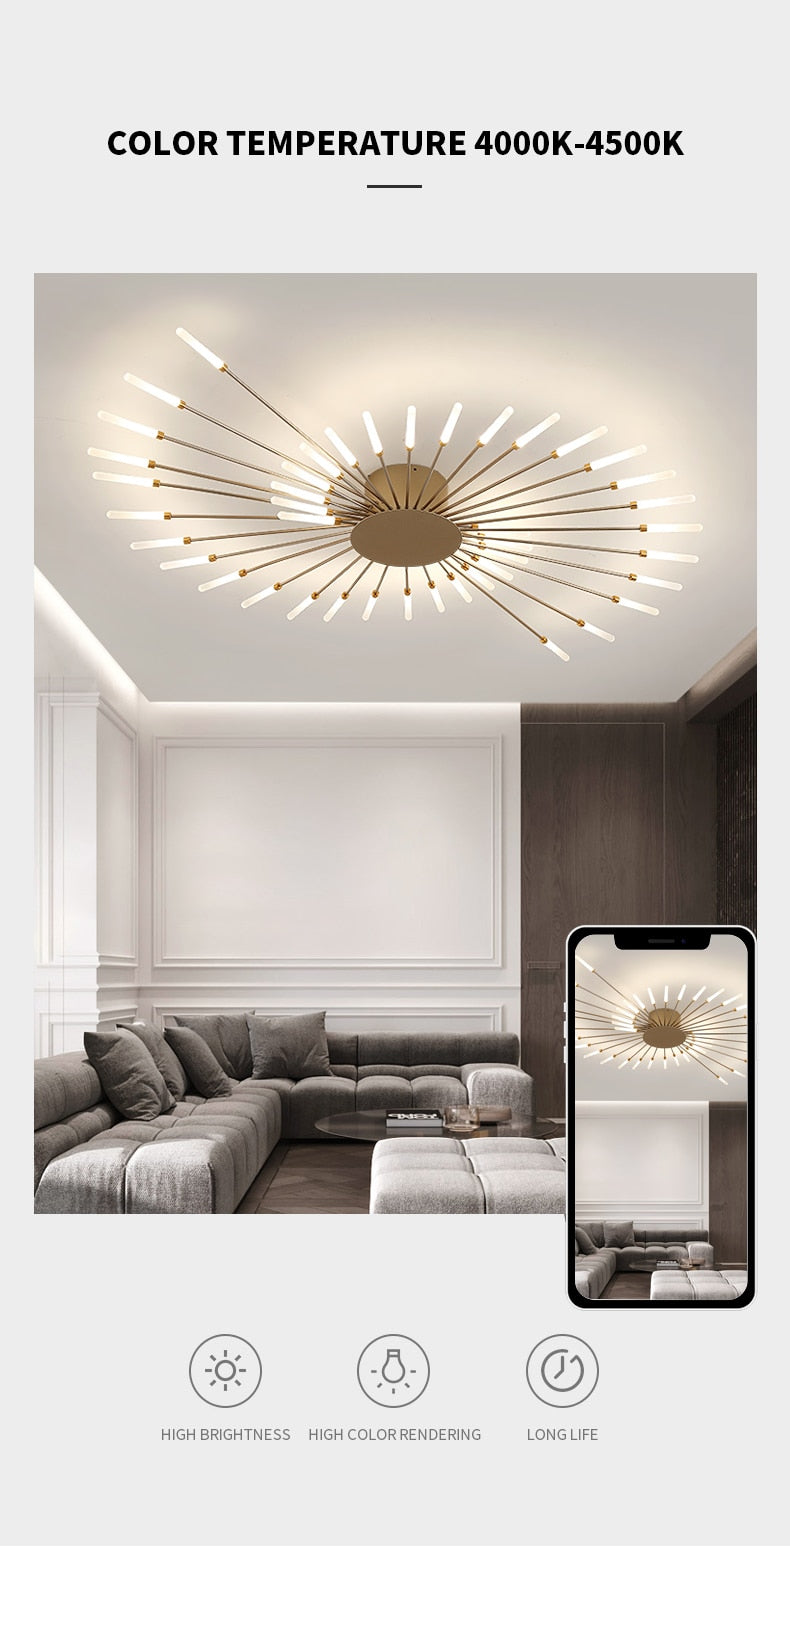 Hot sale fireworks led Chandelier For Living Room Bedroom Home chandelier Modern Led Ceiling Chandelier Lamp Lighting chandelier